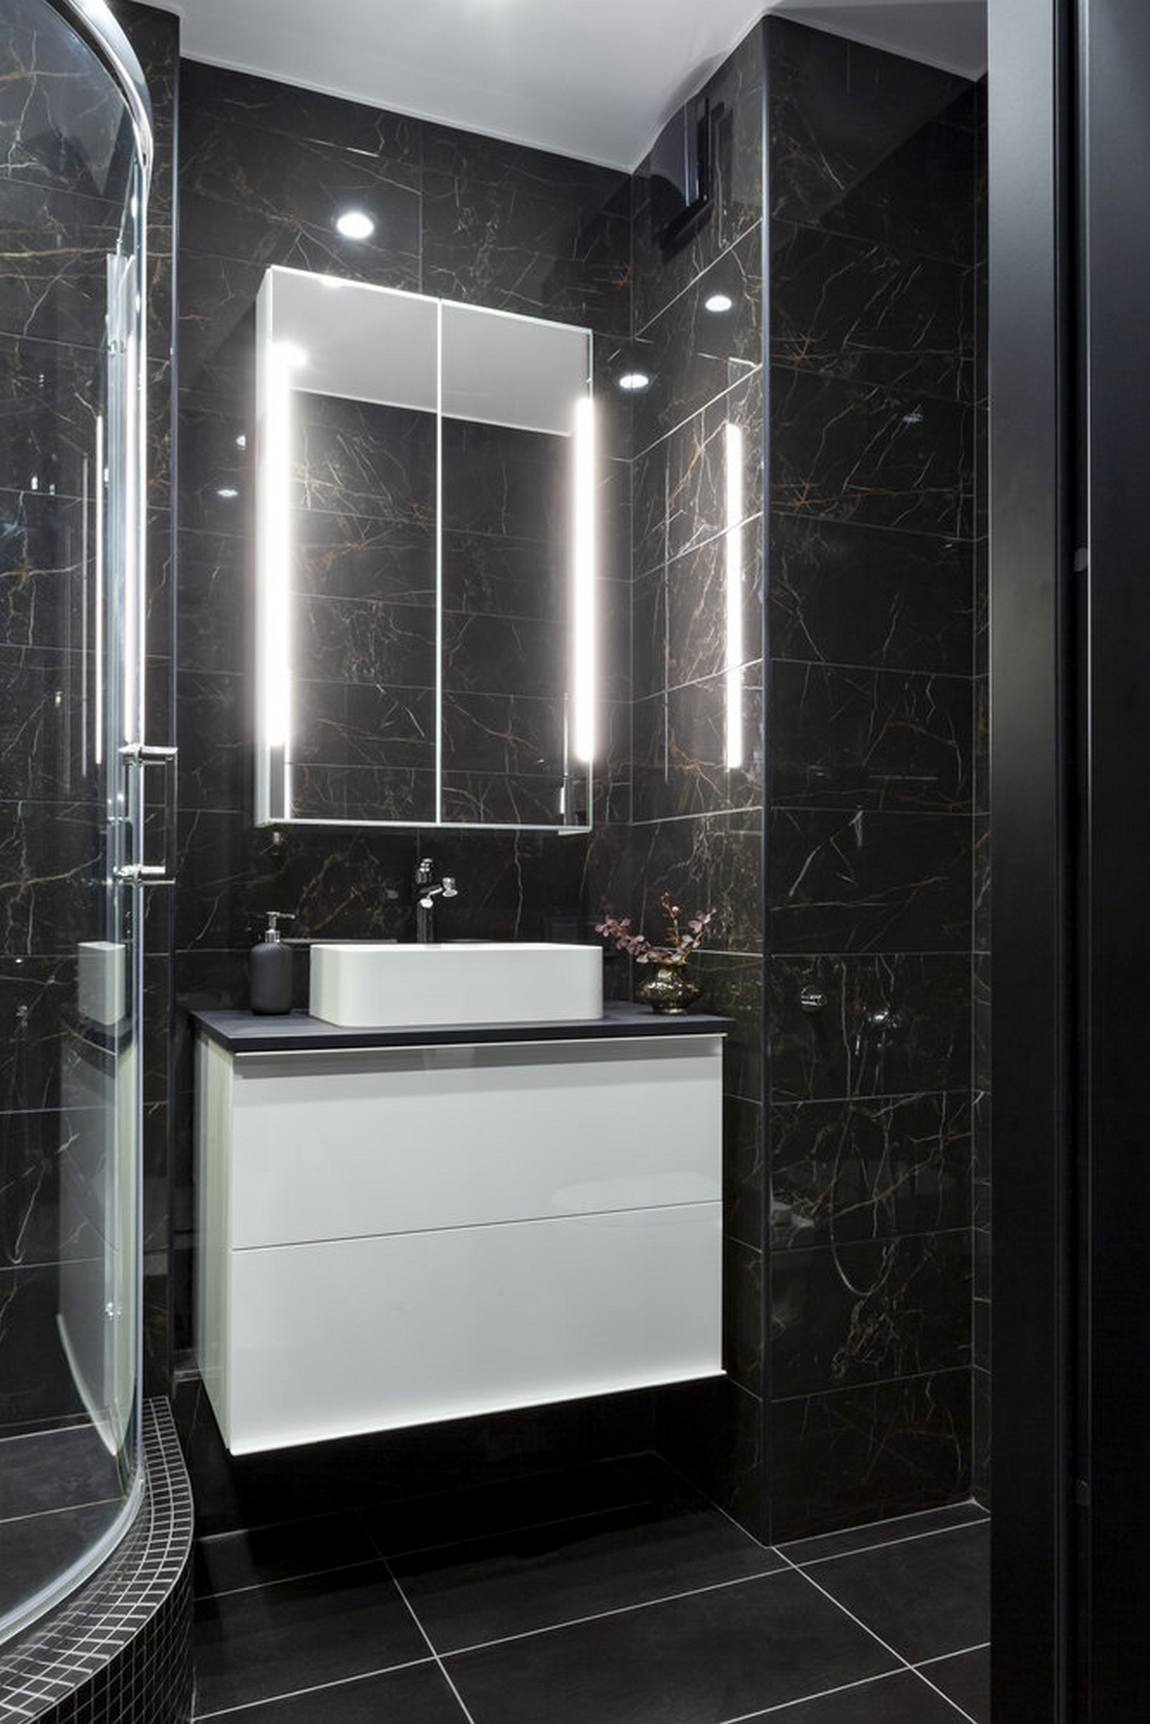 Phòng tắm và nhà vệ sinh được thiết kế với tông màu đen chủ đạo cho cảm giác bí ẩn và lôi cuốn. Bức tường ốp đá đen với đường vân đẹp mắt, tủ lưu trữ kết hợp bồn rửa màu trắng tinh, bên trên là chiếc tủ ốp cửa gương và đèn chiếu sáng tiện ích.